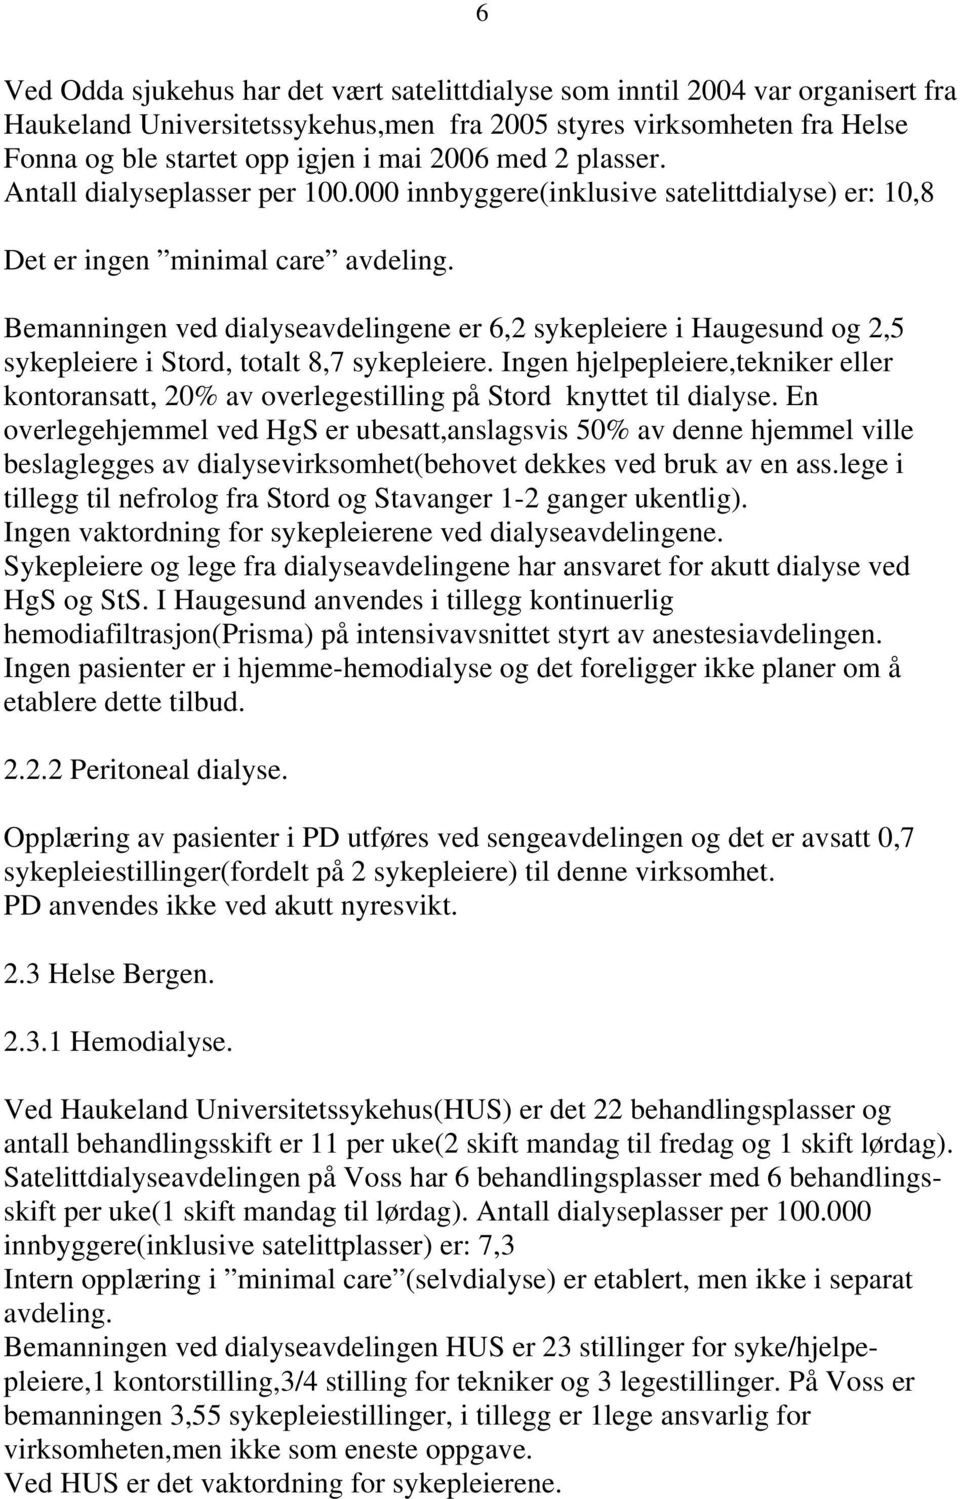 Bemanningen ved dialyseavdelingene er 6,2 sykepleiere i Haugesund og 2,5 sykepleiere i Stord, totalt 8,7 sykepleiere.